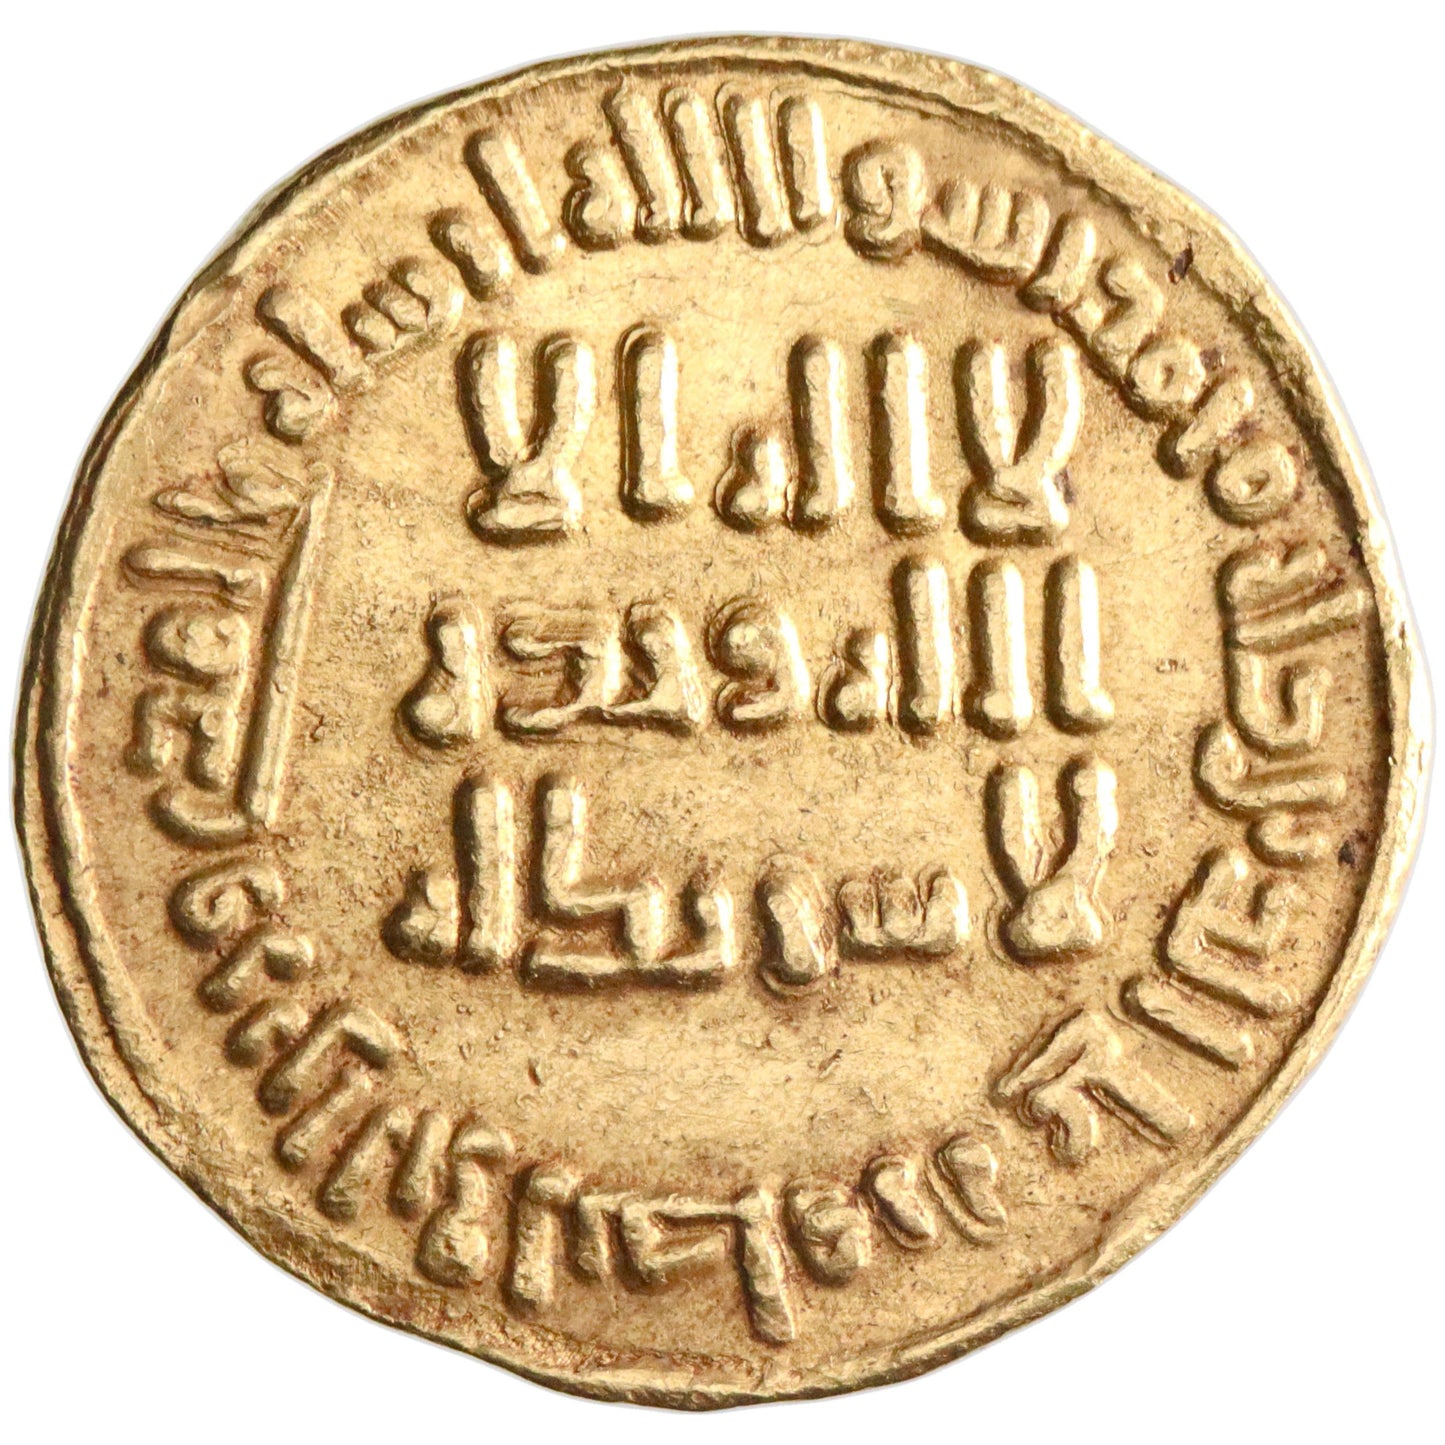 Umayyad, al-Walid I ibn 'Abd al-Malik, gold dinar, AH 88